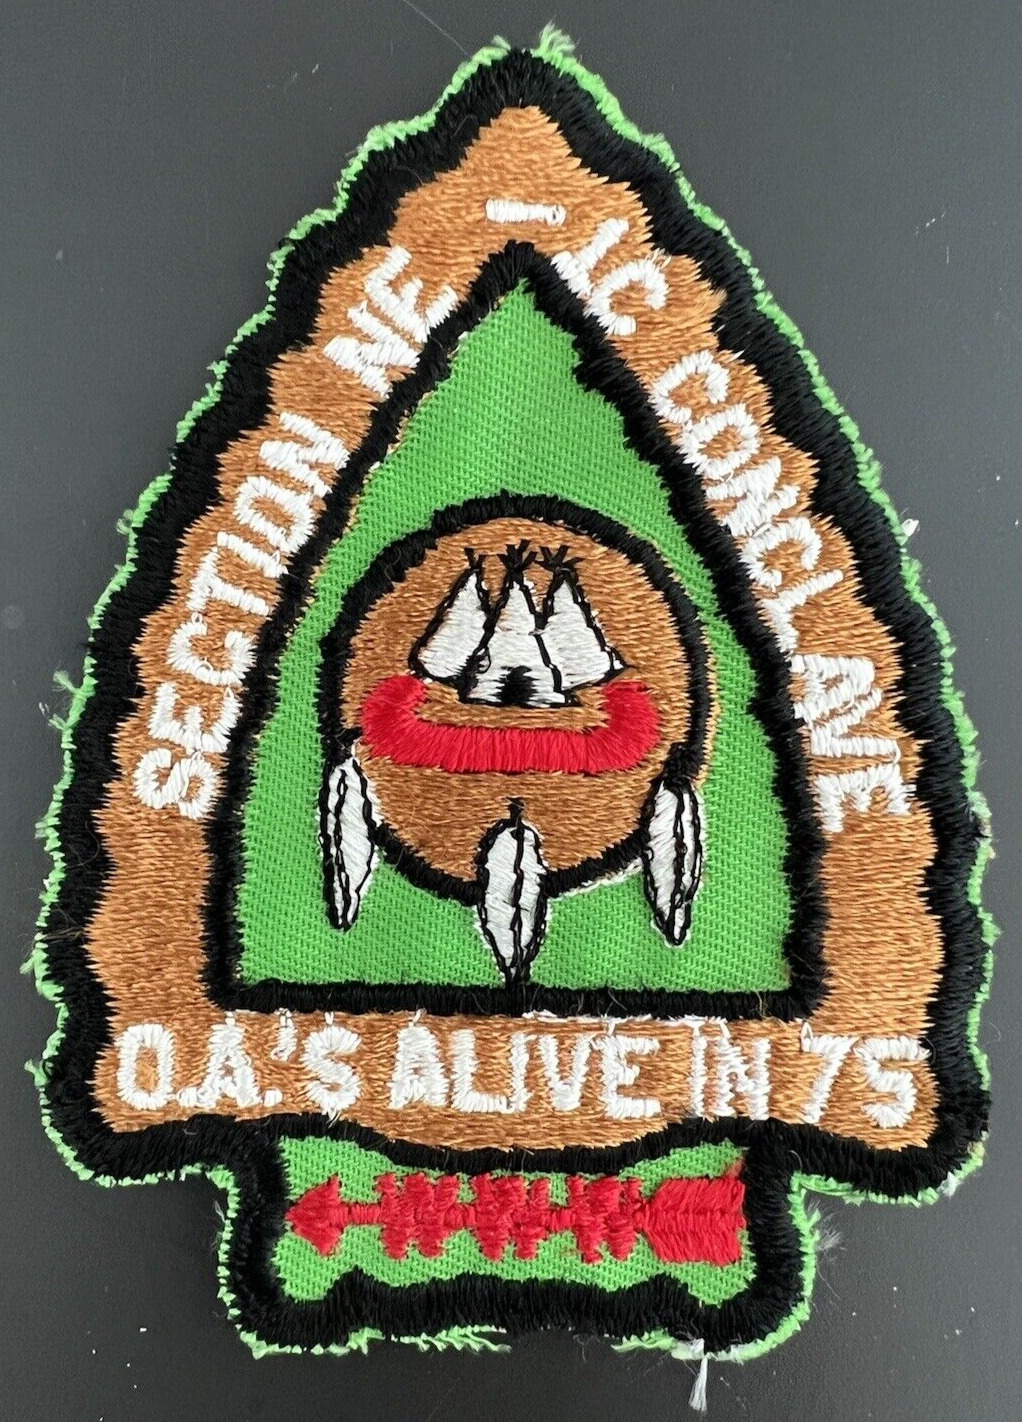 Boy Scout OA Section NE-1C 1975 Conclave Cloth Patch